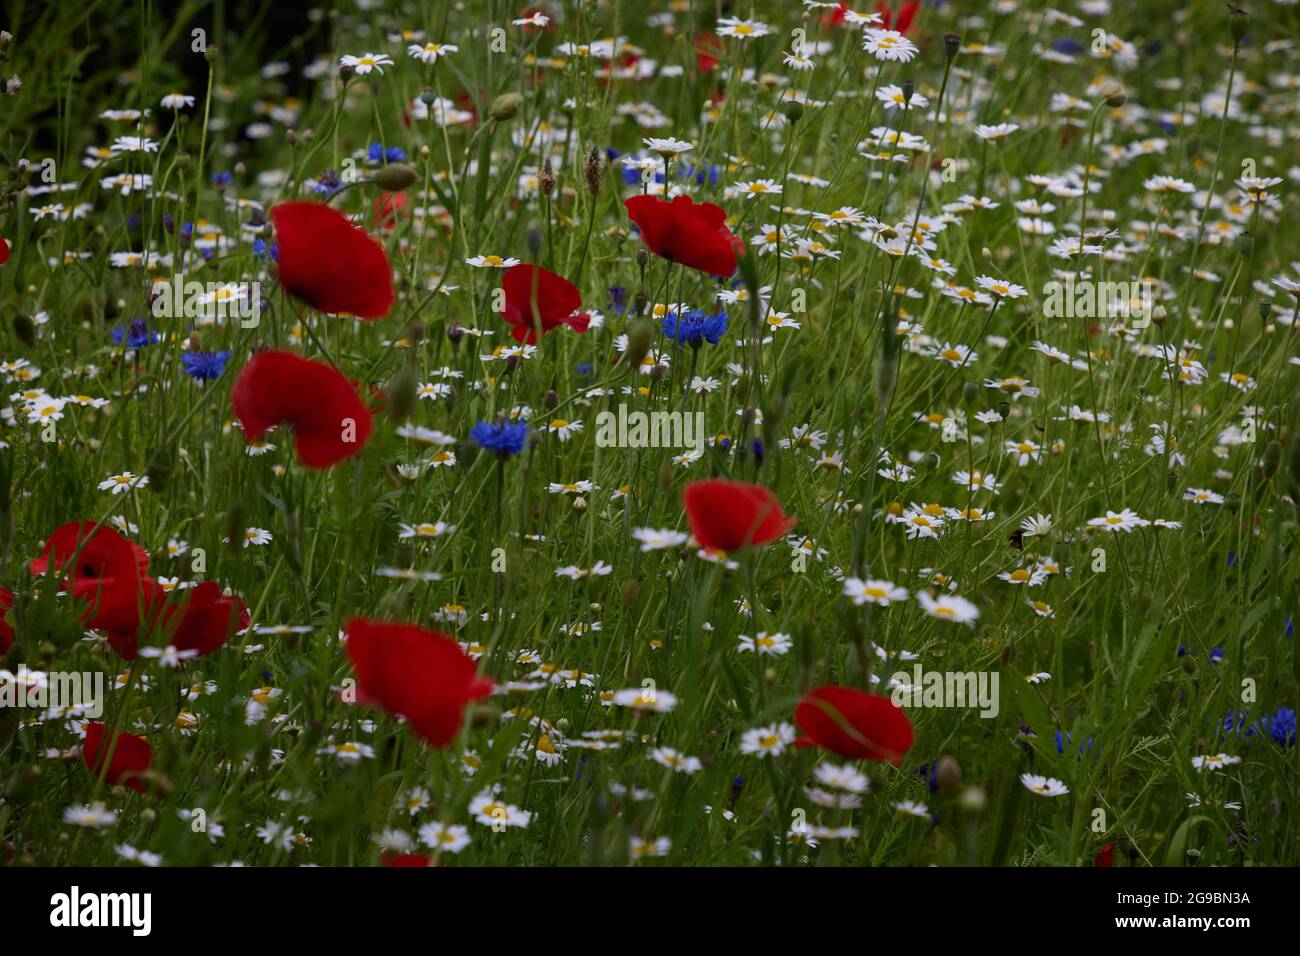 Eine Mischung aus Weidenblumen wie Mohnblumen, margareten und Maisblüten, die im Juli auf dem englischen Land zu sehen war. Stockfoto